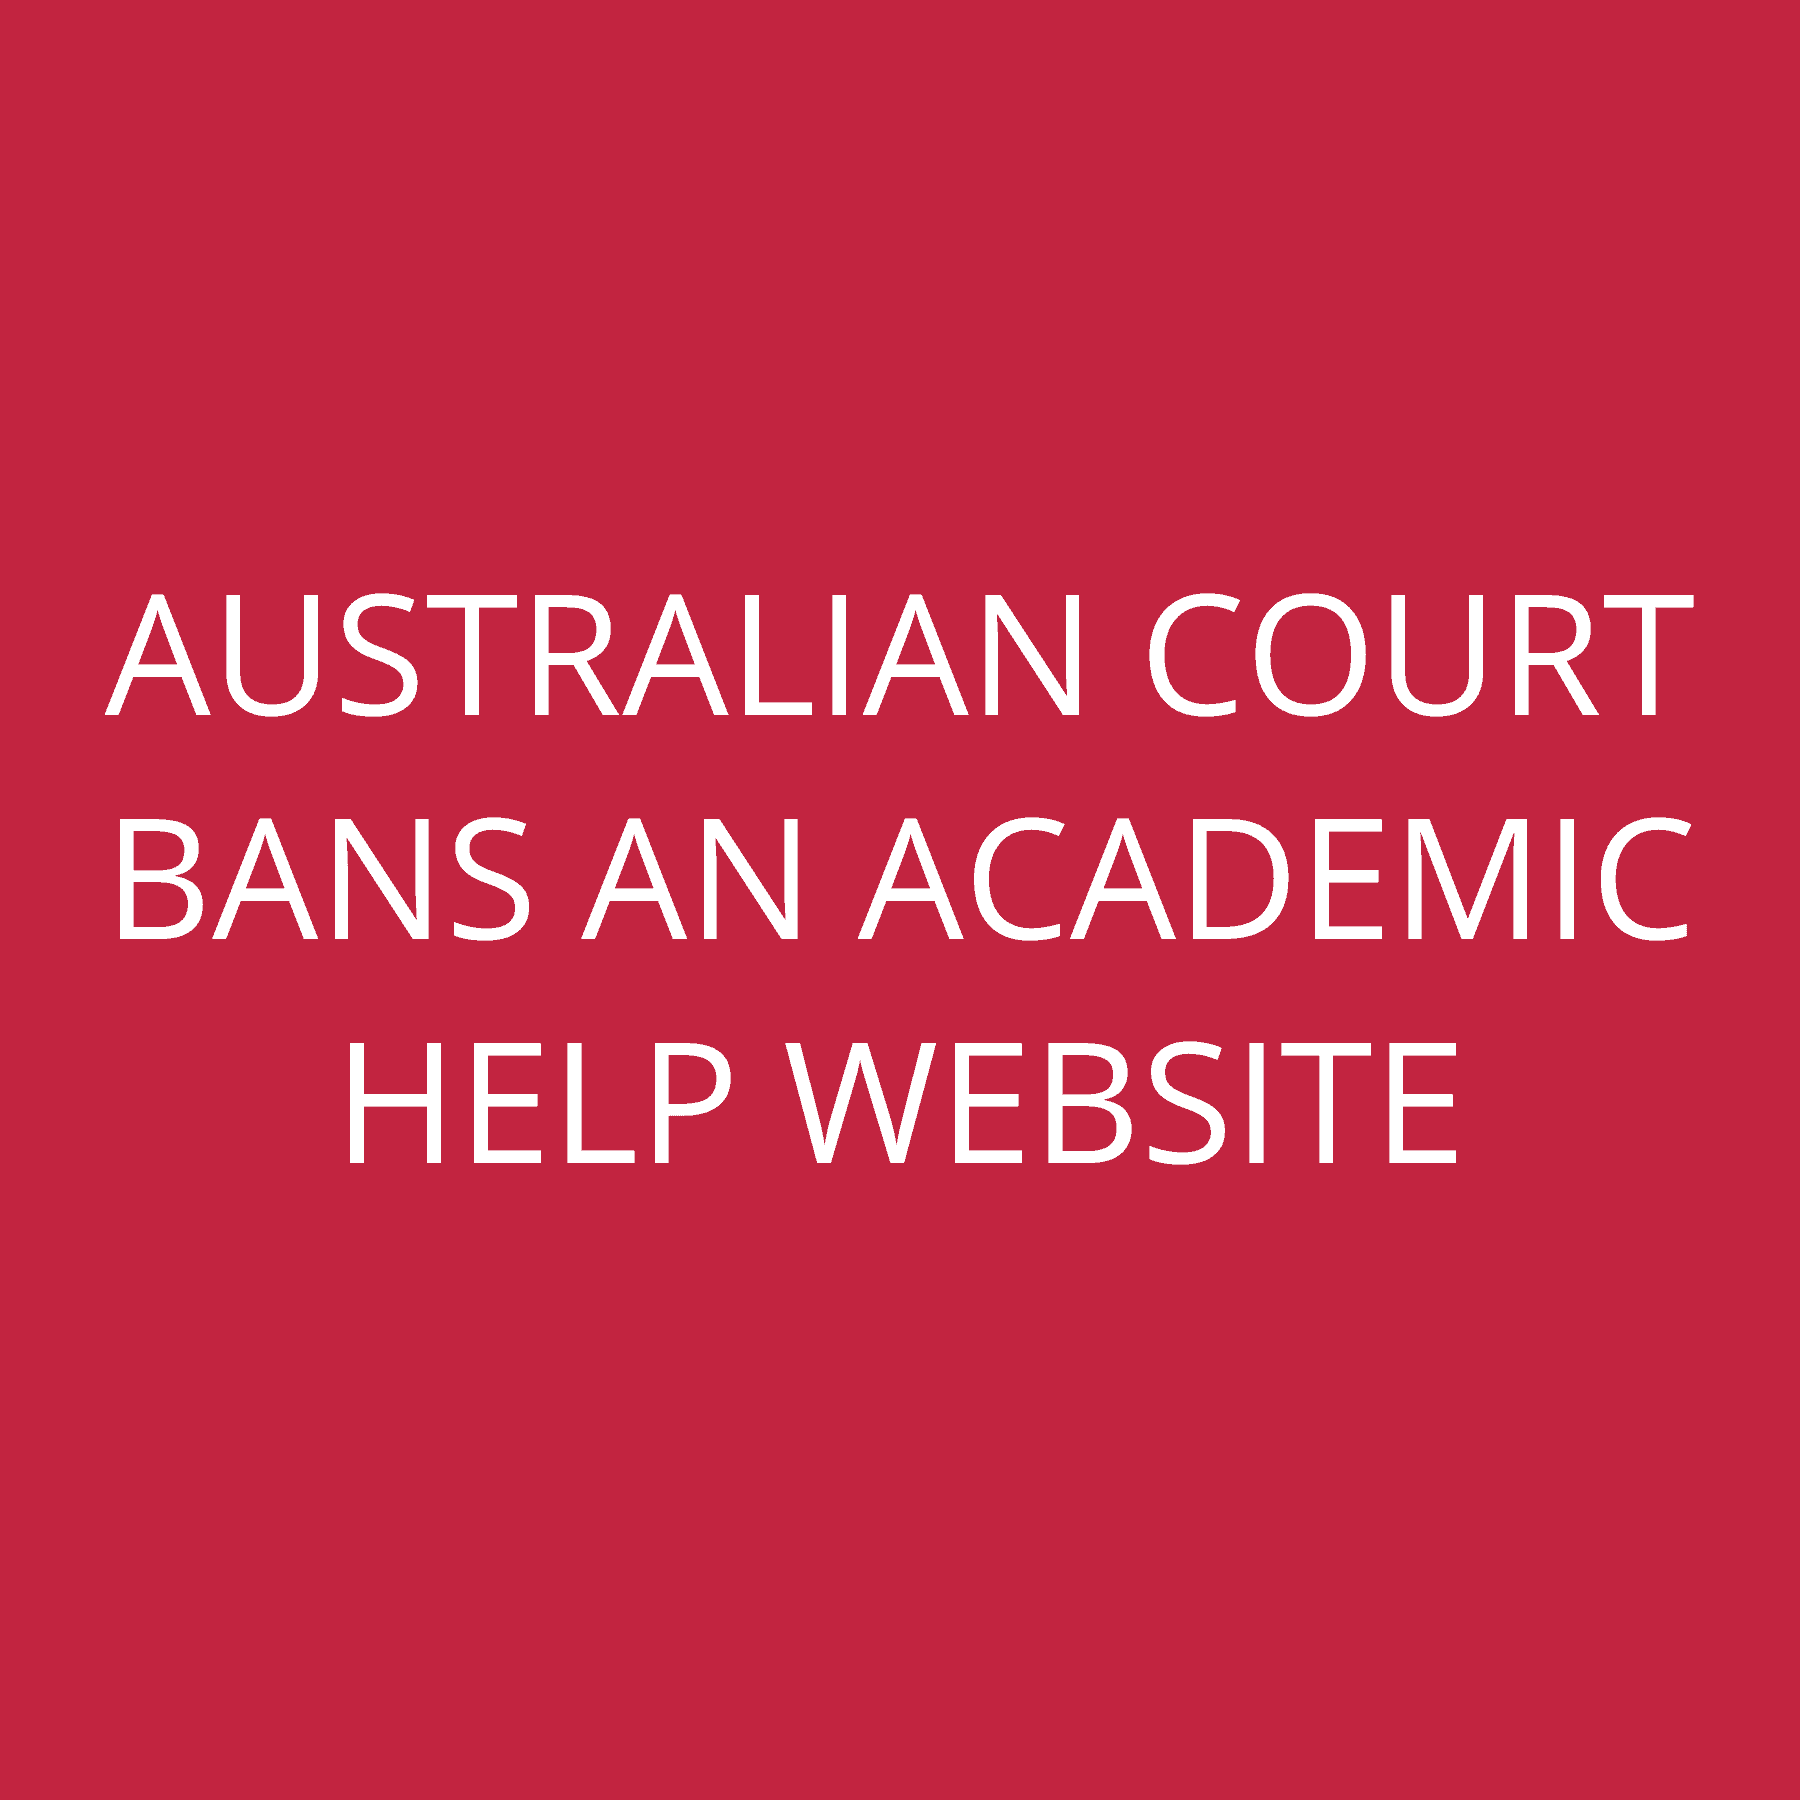 Australian court bans an academic help website